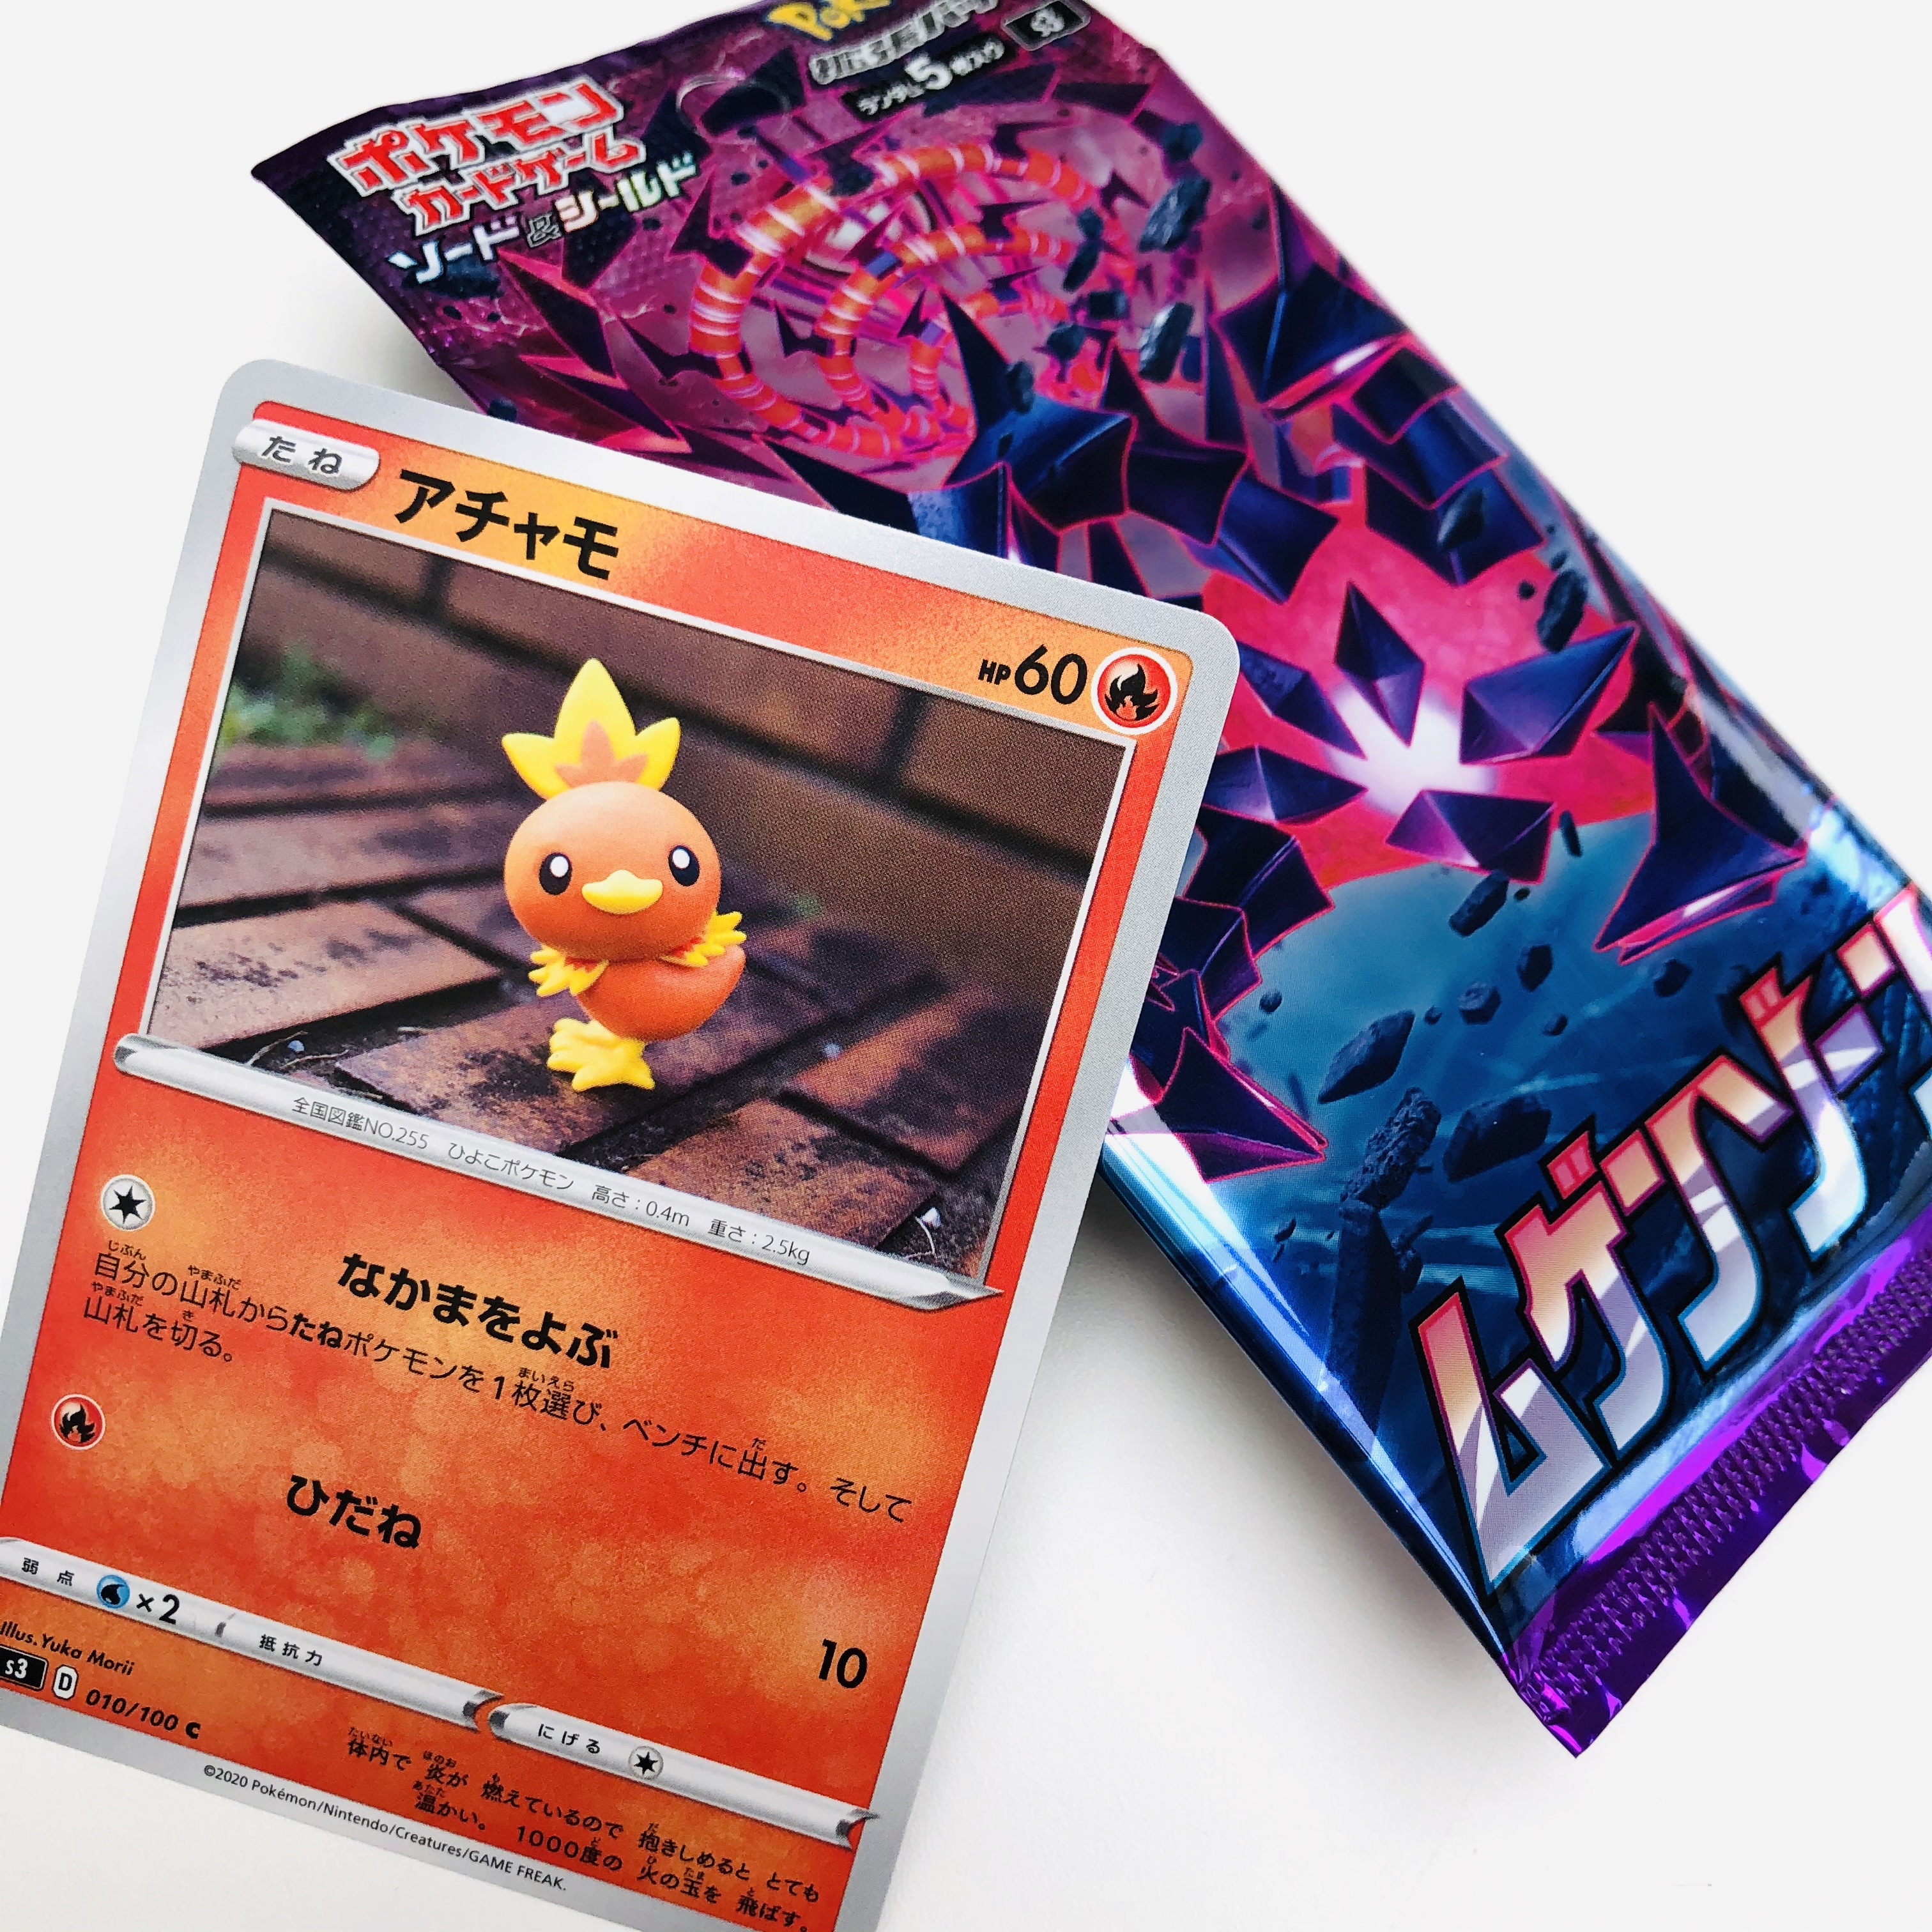 森井ユカ Yuka Morii たねポケモンの アチャモ を 焼いて固める樹脂粘土で作りました 強化拡張パック ムゲンゾーン に入っている カモよ 我的新寶可夢卡发售的 The New Pokemon Card Has Gone Out These Are Handmade And Made Of Clay Fimo